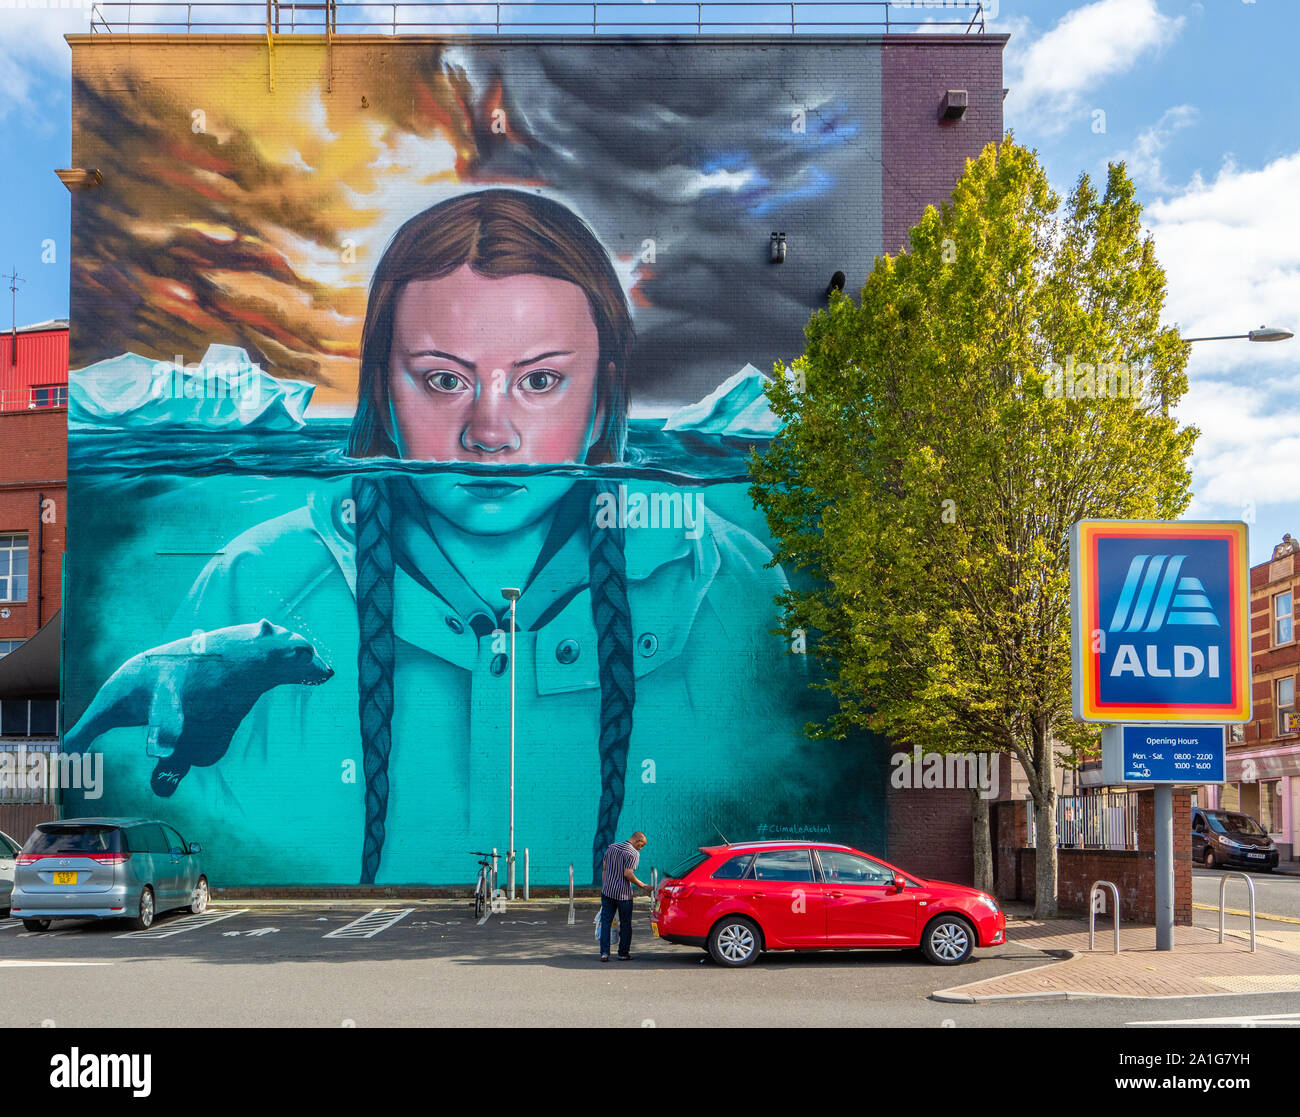 Riesige Wandgemälde von Greta Thunberg schwedische Schulmädchen Umweltaktivist auf die Wände der Tabakfabrik Theater von Aldi Parkplatz gemalt - Bristol GROSSBRITANNIEN Stockfoto